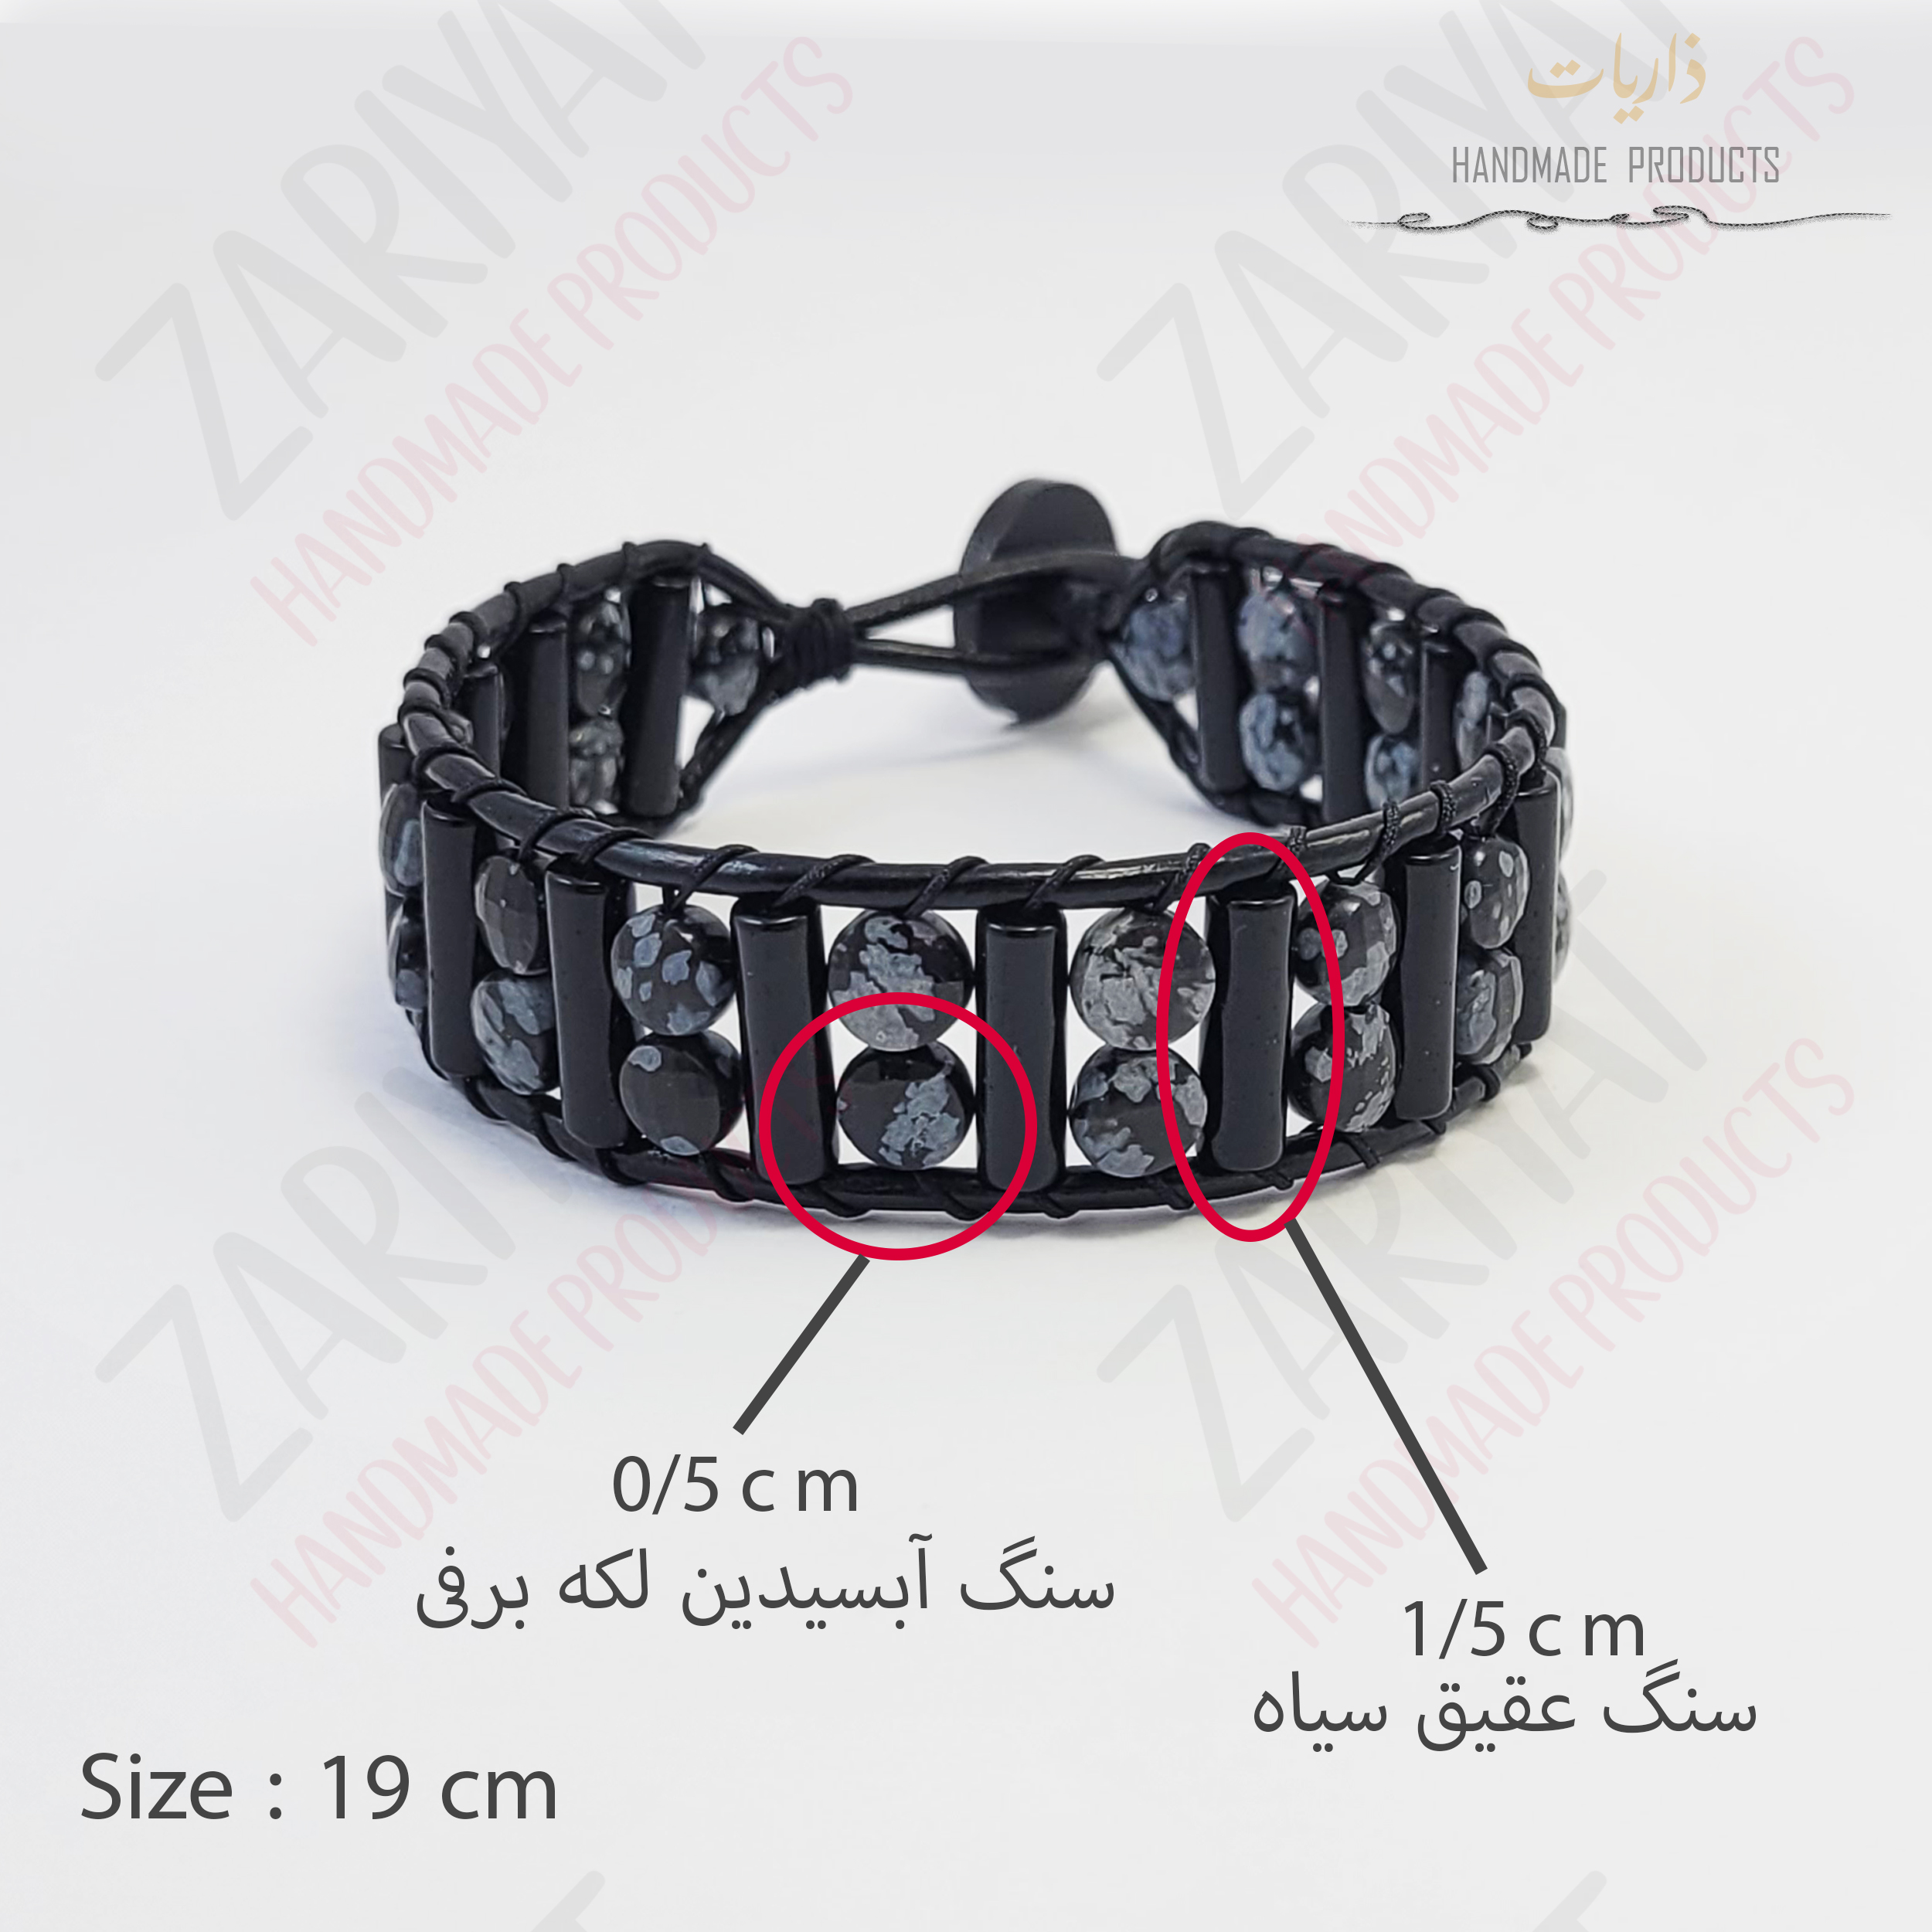 دستبند مردانه ذاریات مدل SNOW کد Z-M.AO602